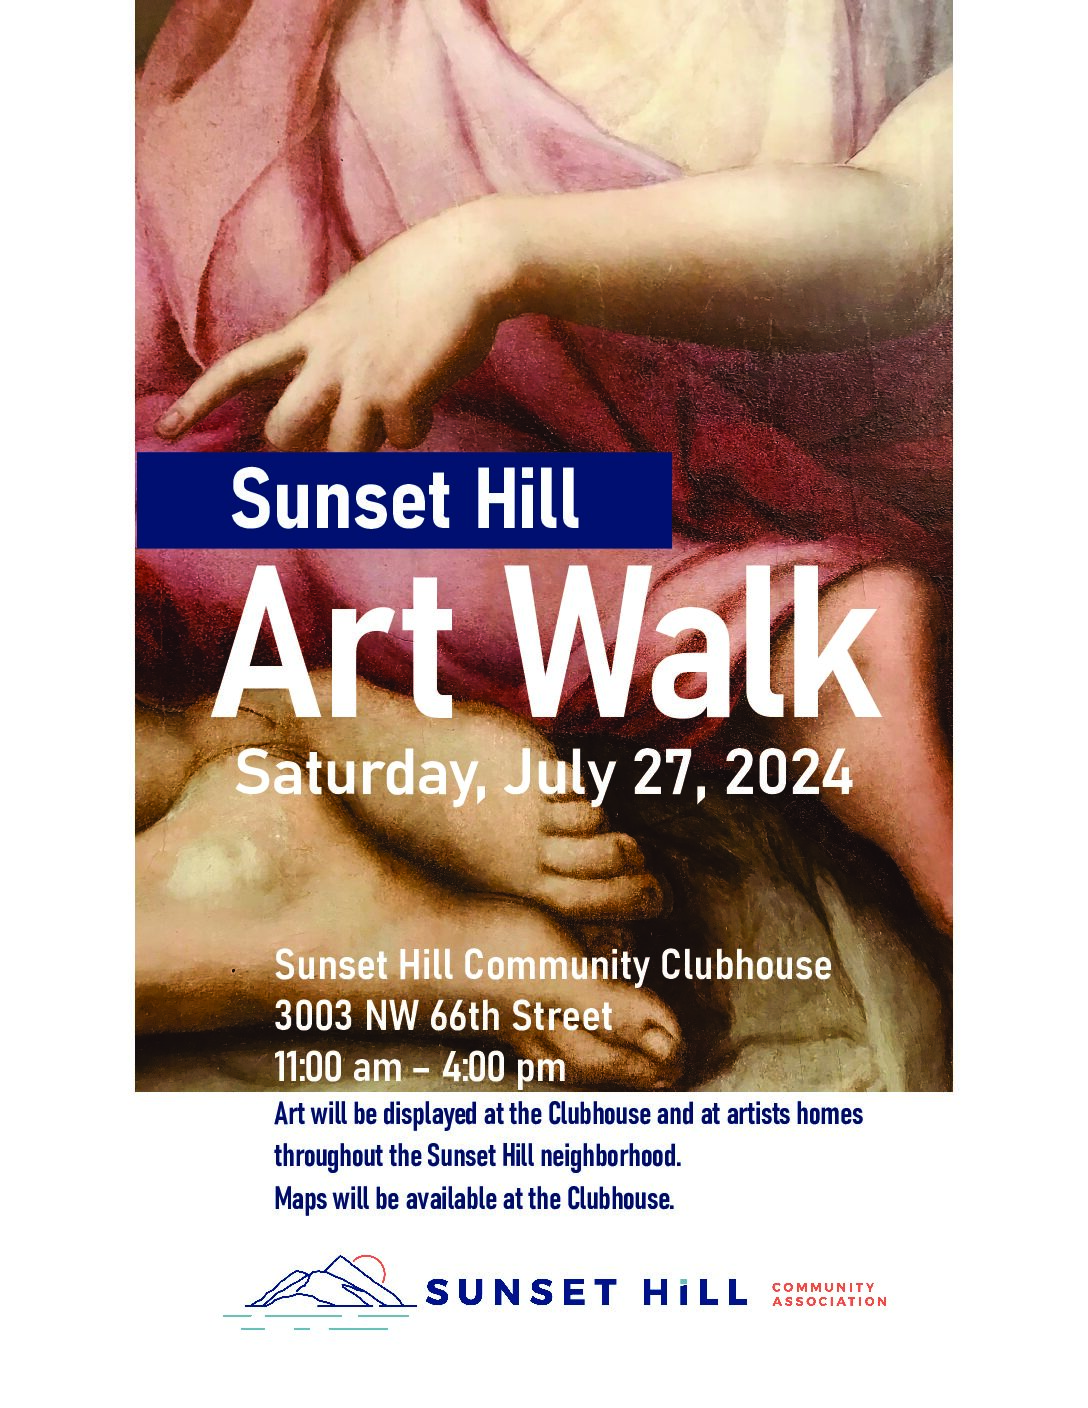 Walking Art Fair: Saturday July 27, 2024!